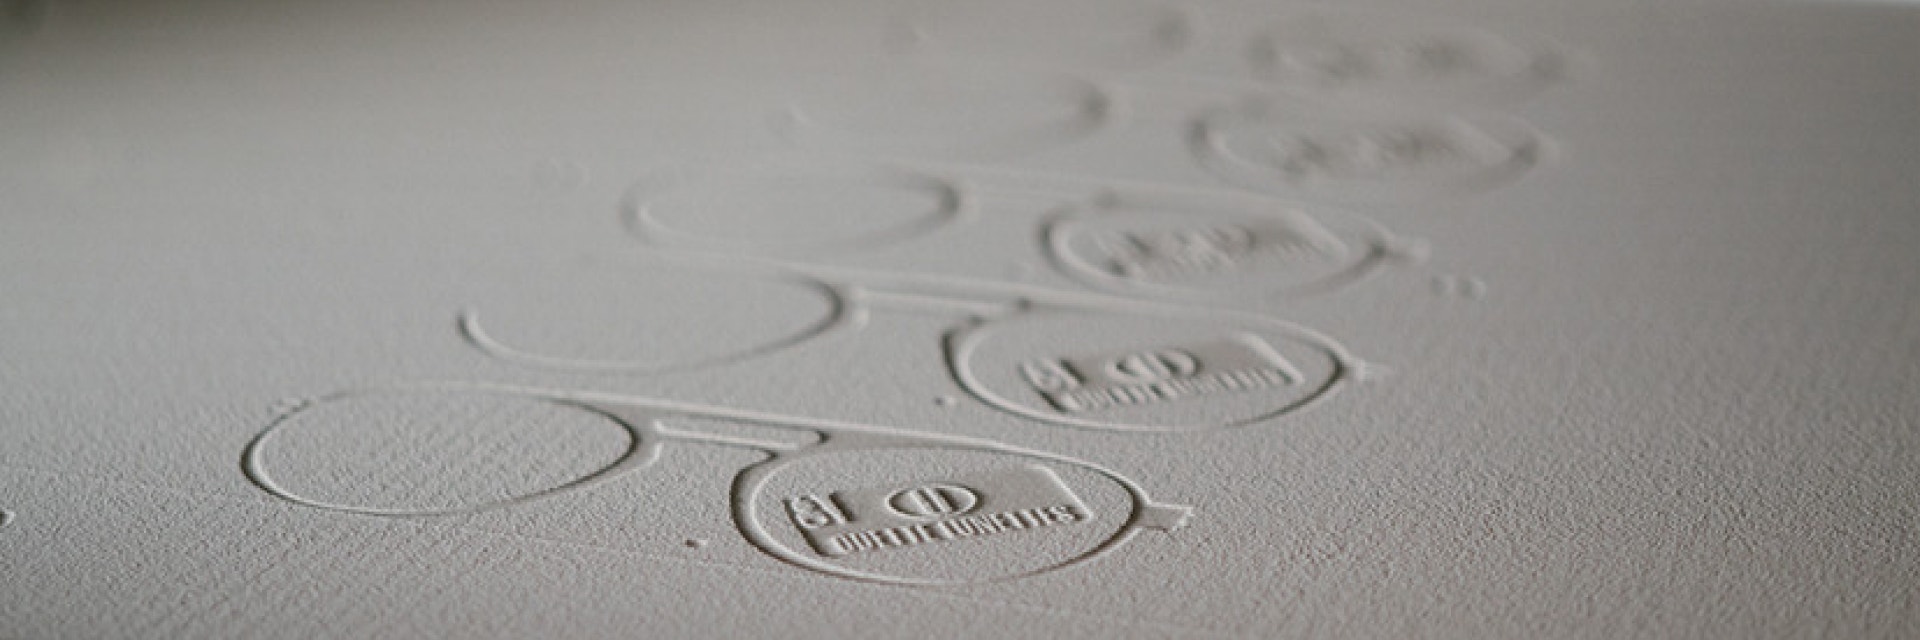 Las monturas de Odette Lunettes en un sinterizado de polvo en el proceso de imprimirse en 3D